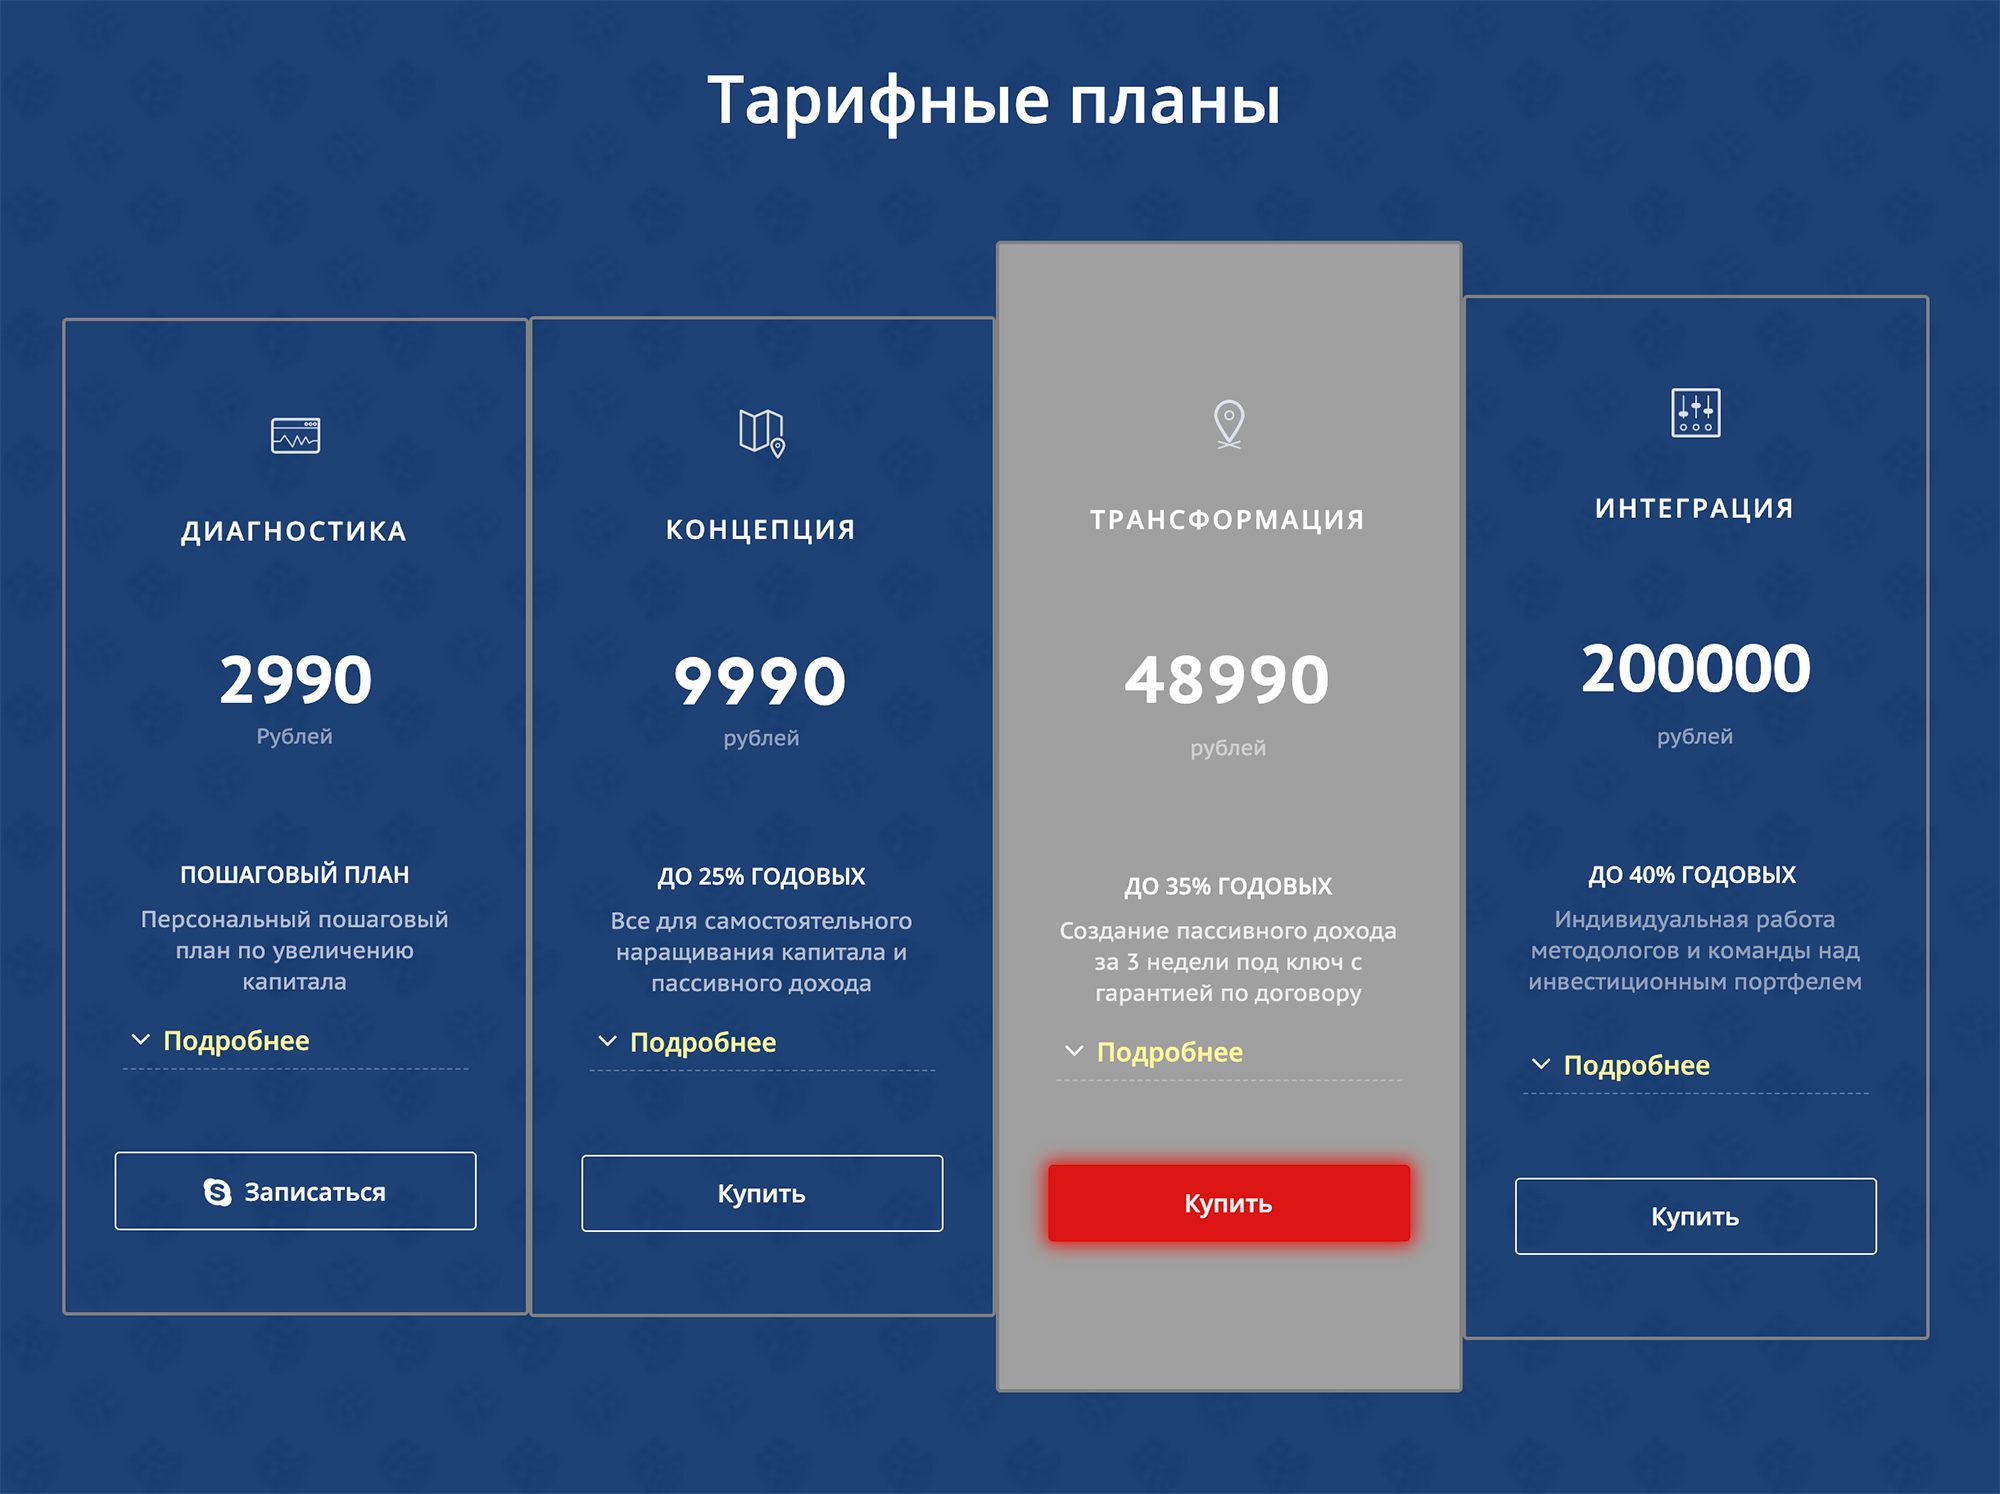 Тарифы «Финтранса» рассчитаны на любой уровень доходов — от 3 до 200 тысяч рублей